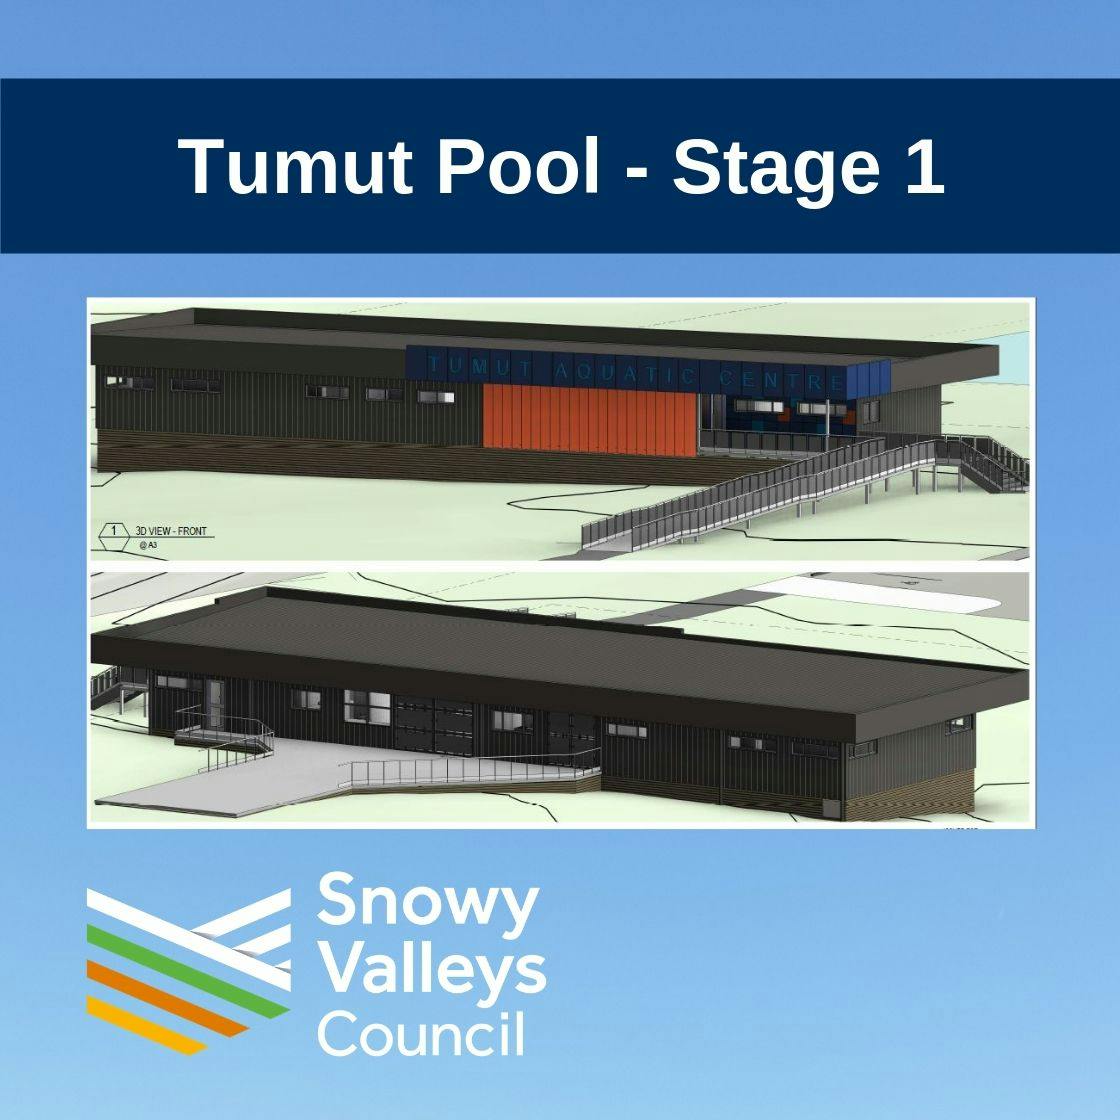 Tumut Pool - Stage 1